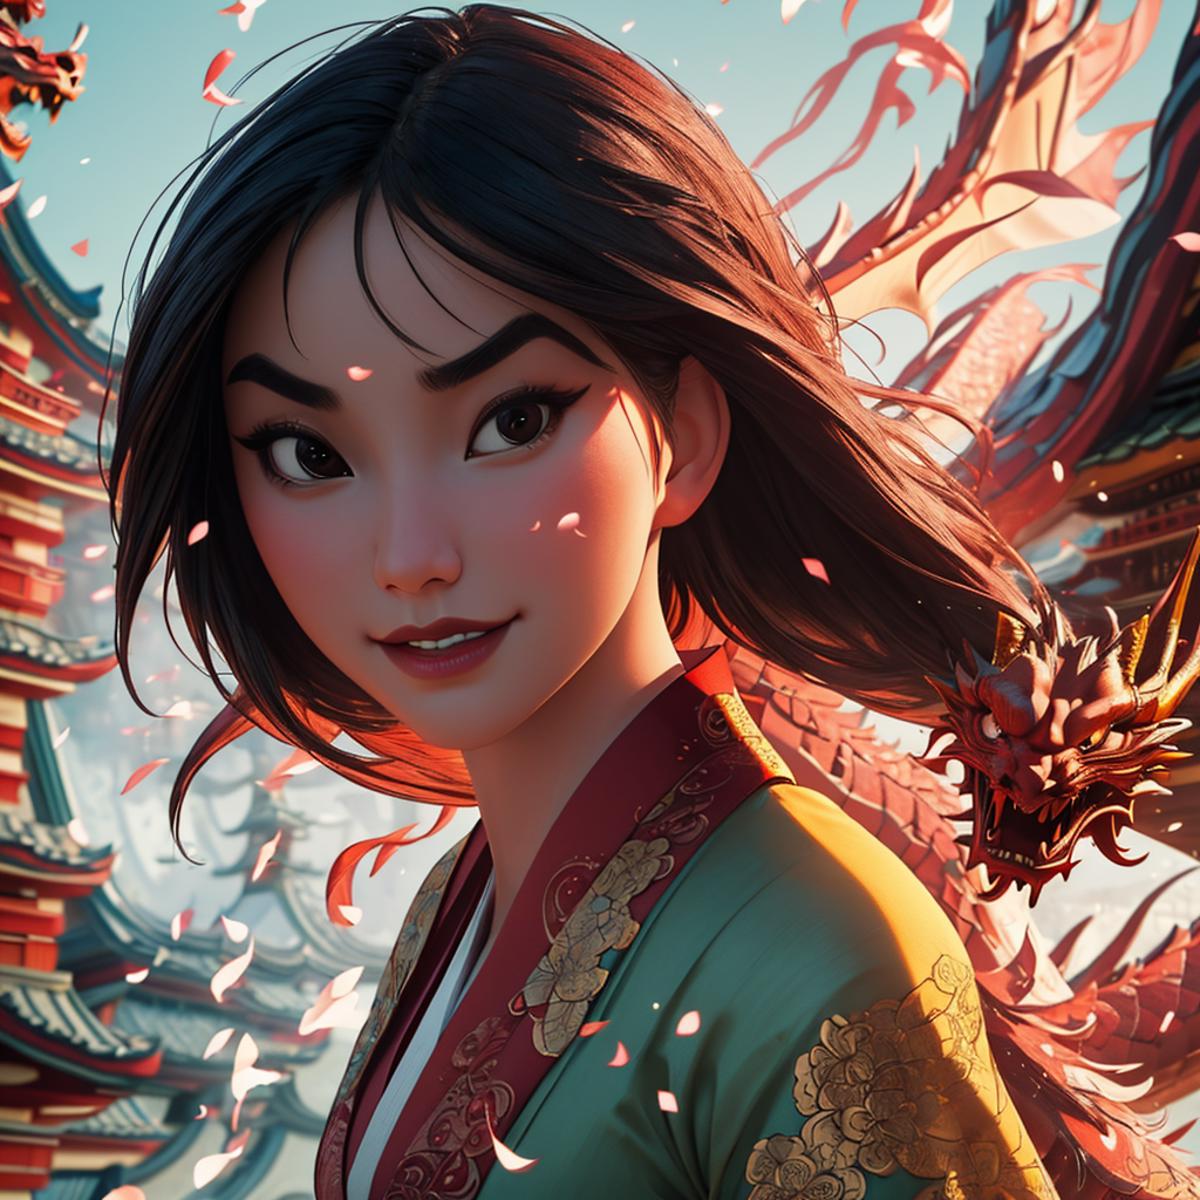 Mulan-Disney image by ljenkins